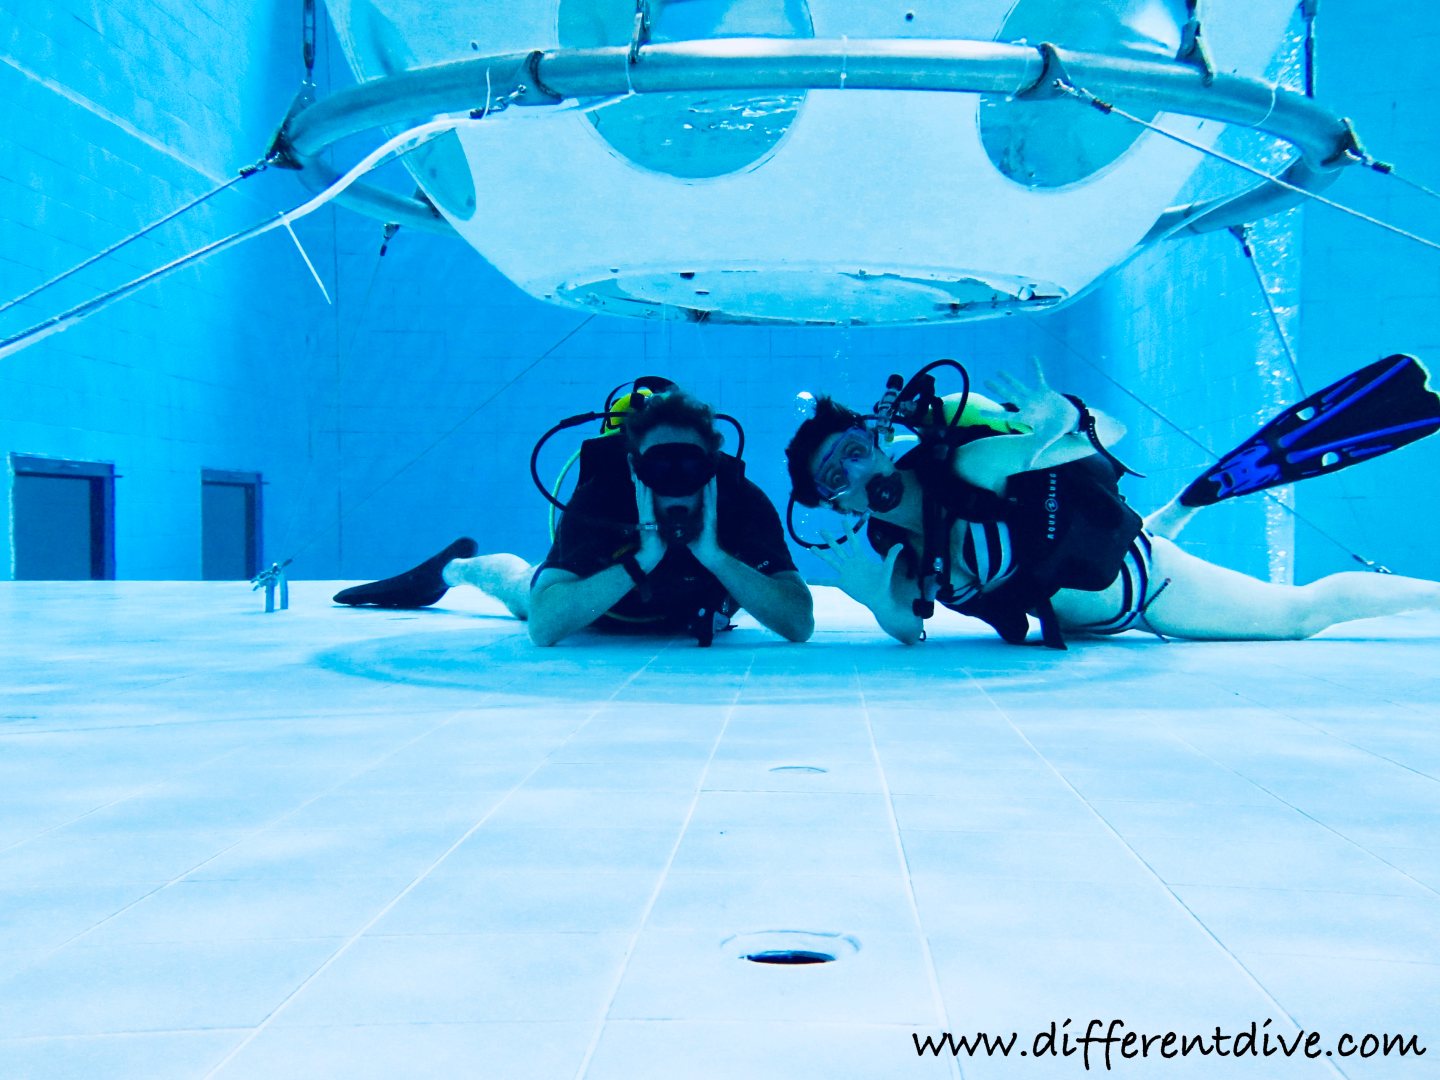 La fosse de Nemo 33 permet de se détendre et de s'amuser dans de l'eau chaude